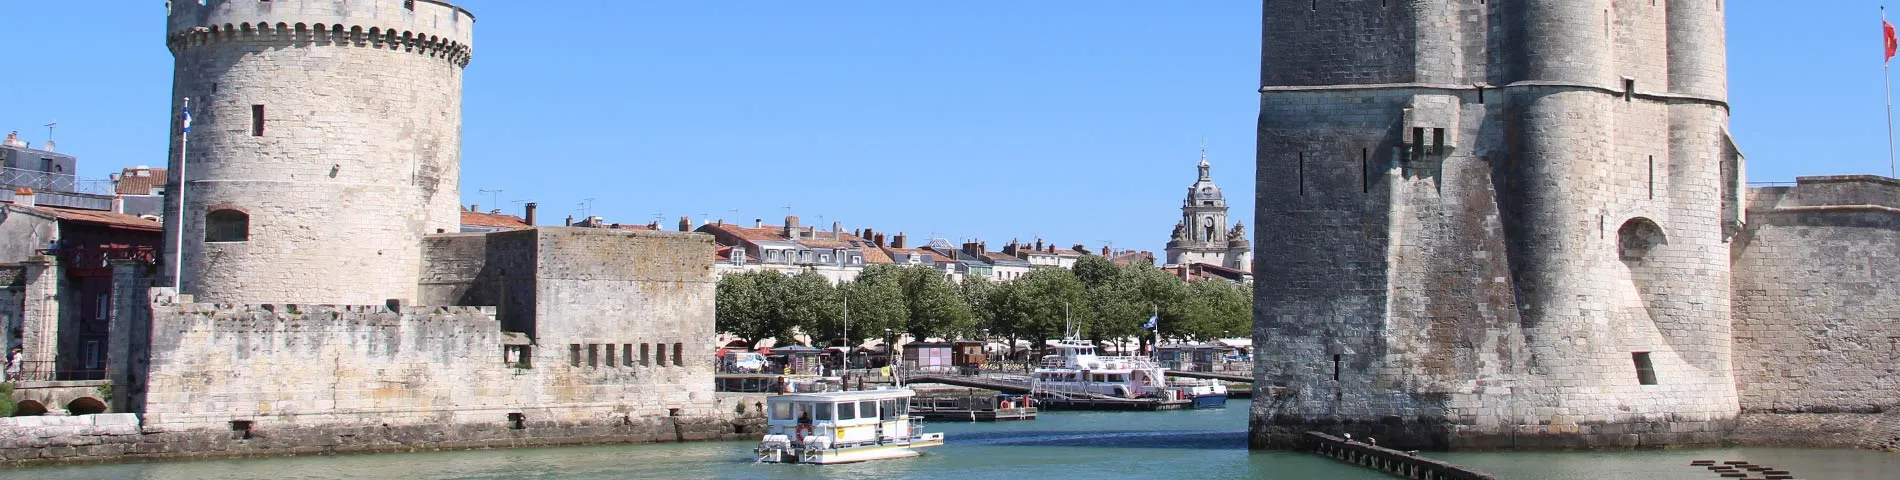 La Rochelle - General